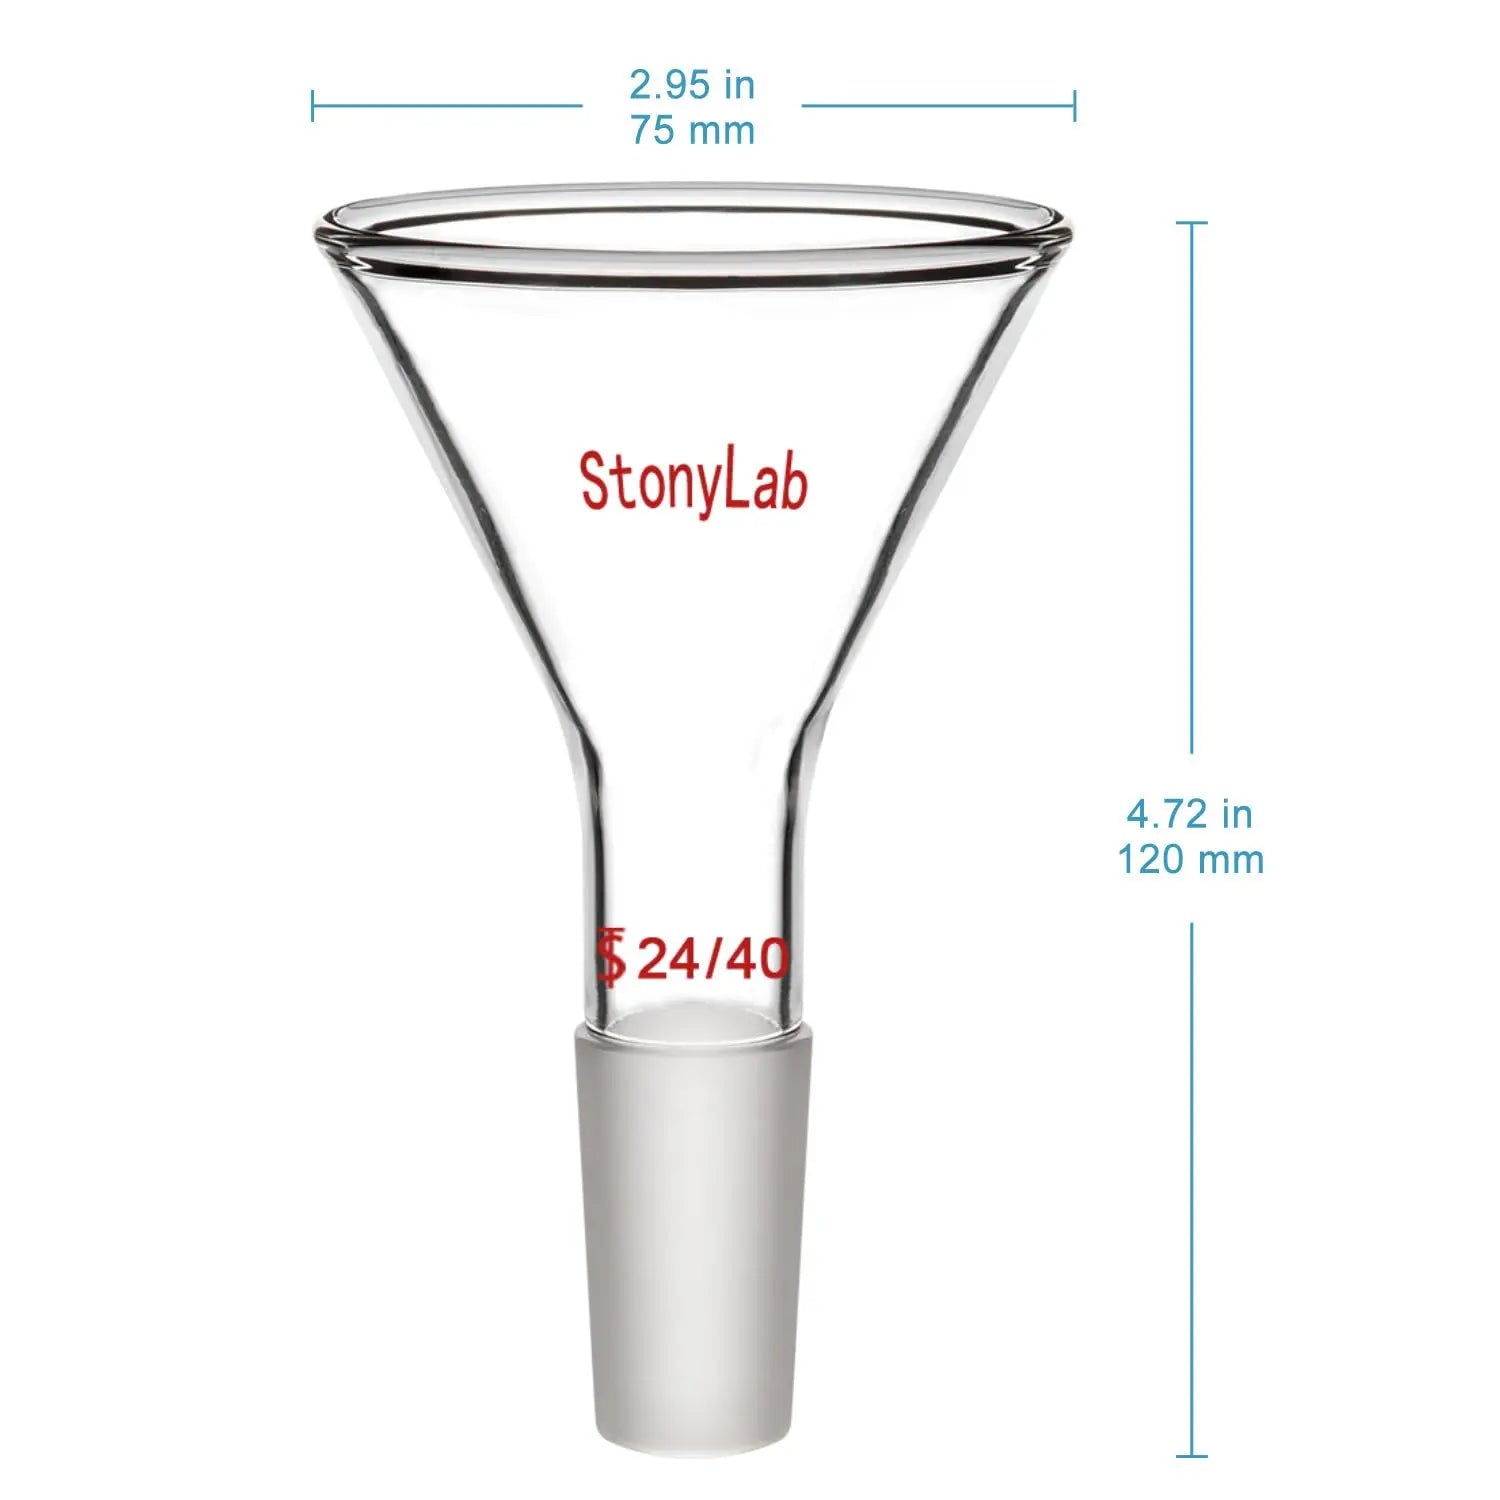 Short Stem Powder Funnel Filter Funnel Funnels - Glass/Powder/Weighing/Equalizing